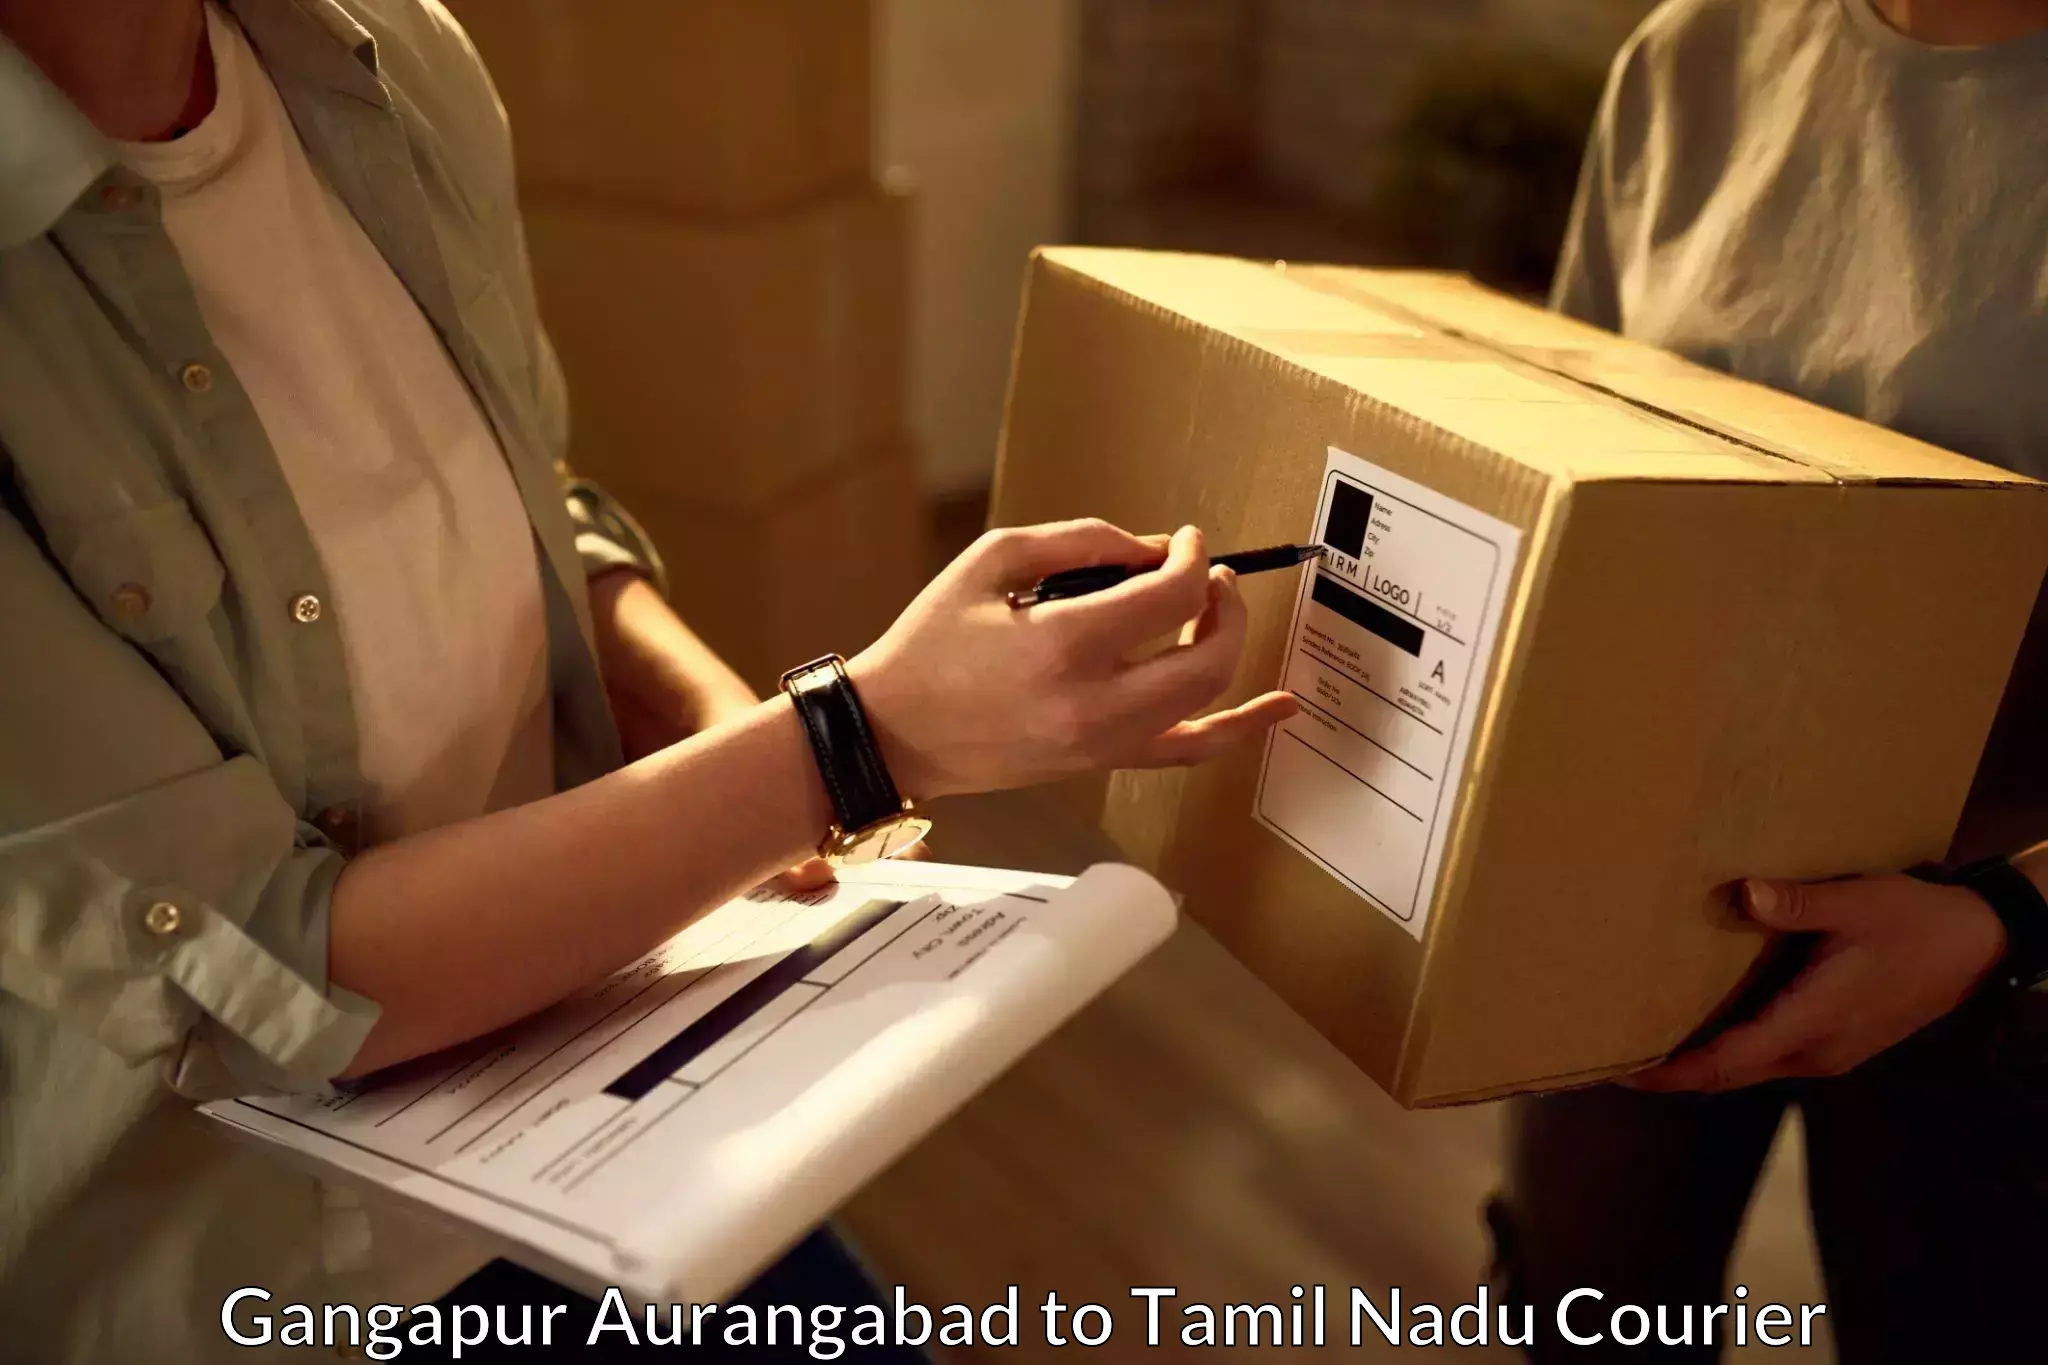 Fast delivery service Gangapur Aurangabad to Salem